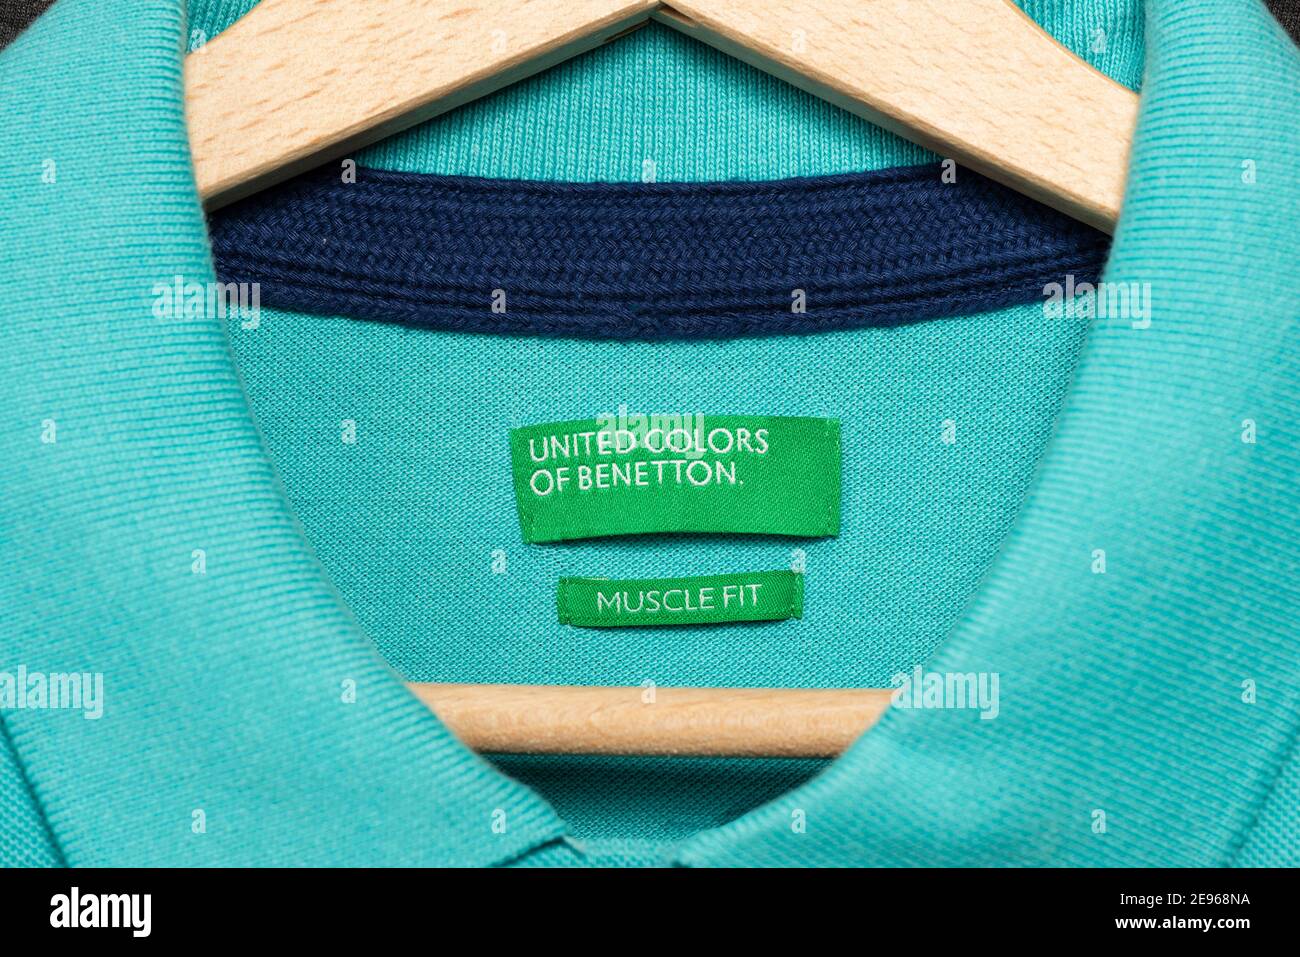 Vereinigte Farben von Benetton Muscle Fit grünes Label auf Teal T-Shirt hängen auf Holz Kleiderbügel. Stockfoto